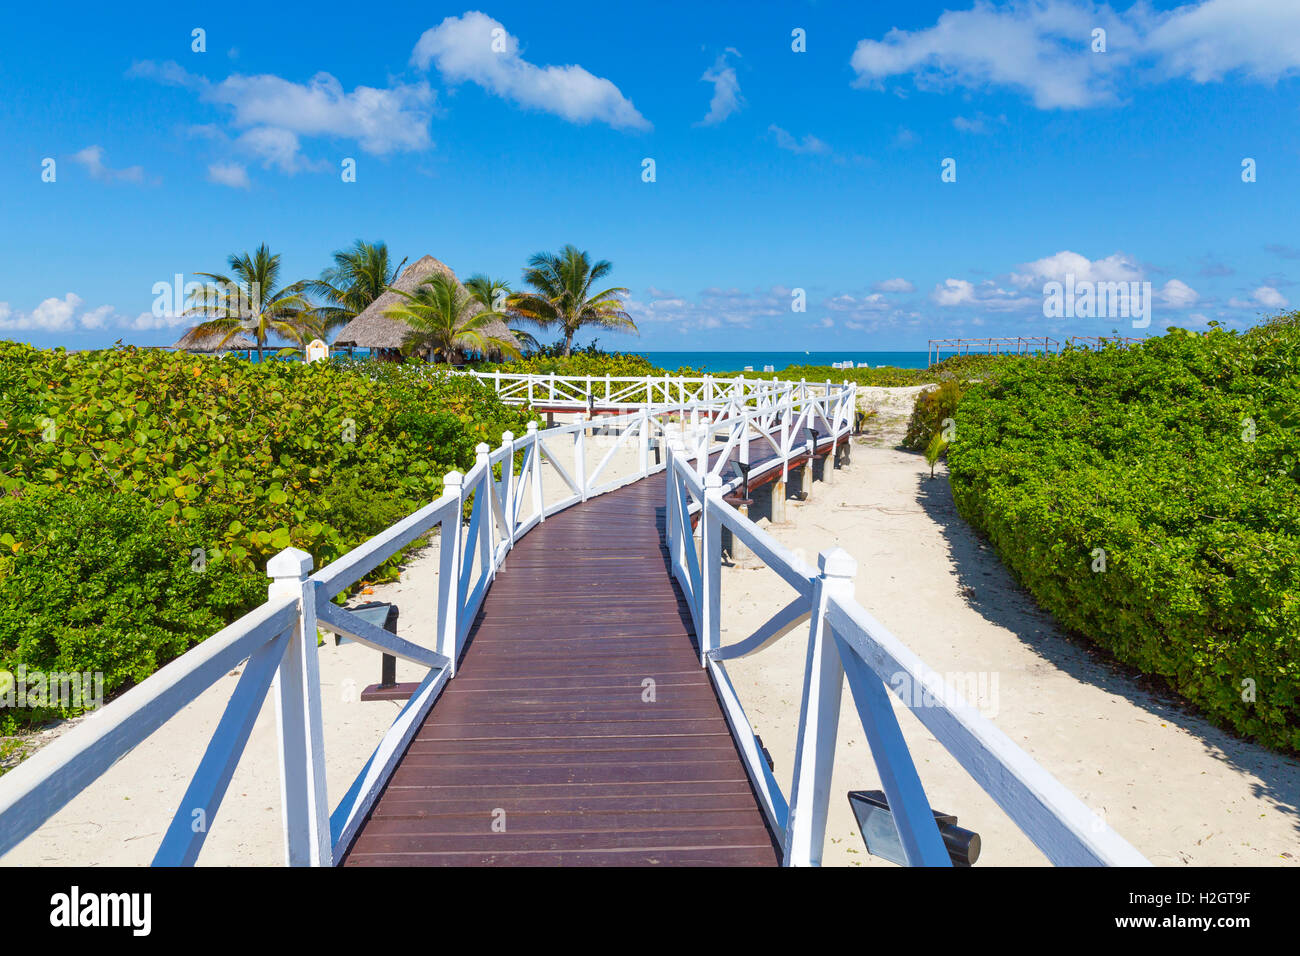 Jetty to the beach, Hotel Melia Las Dunas, island of Cayo Santa Maria,  Caribbean, Cuba Stock Photo - Alamy